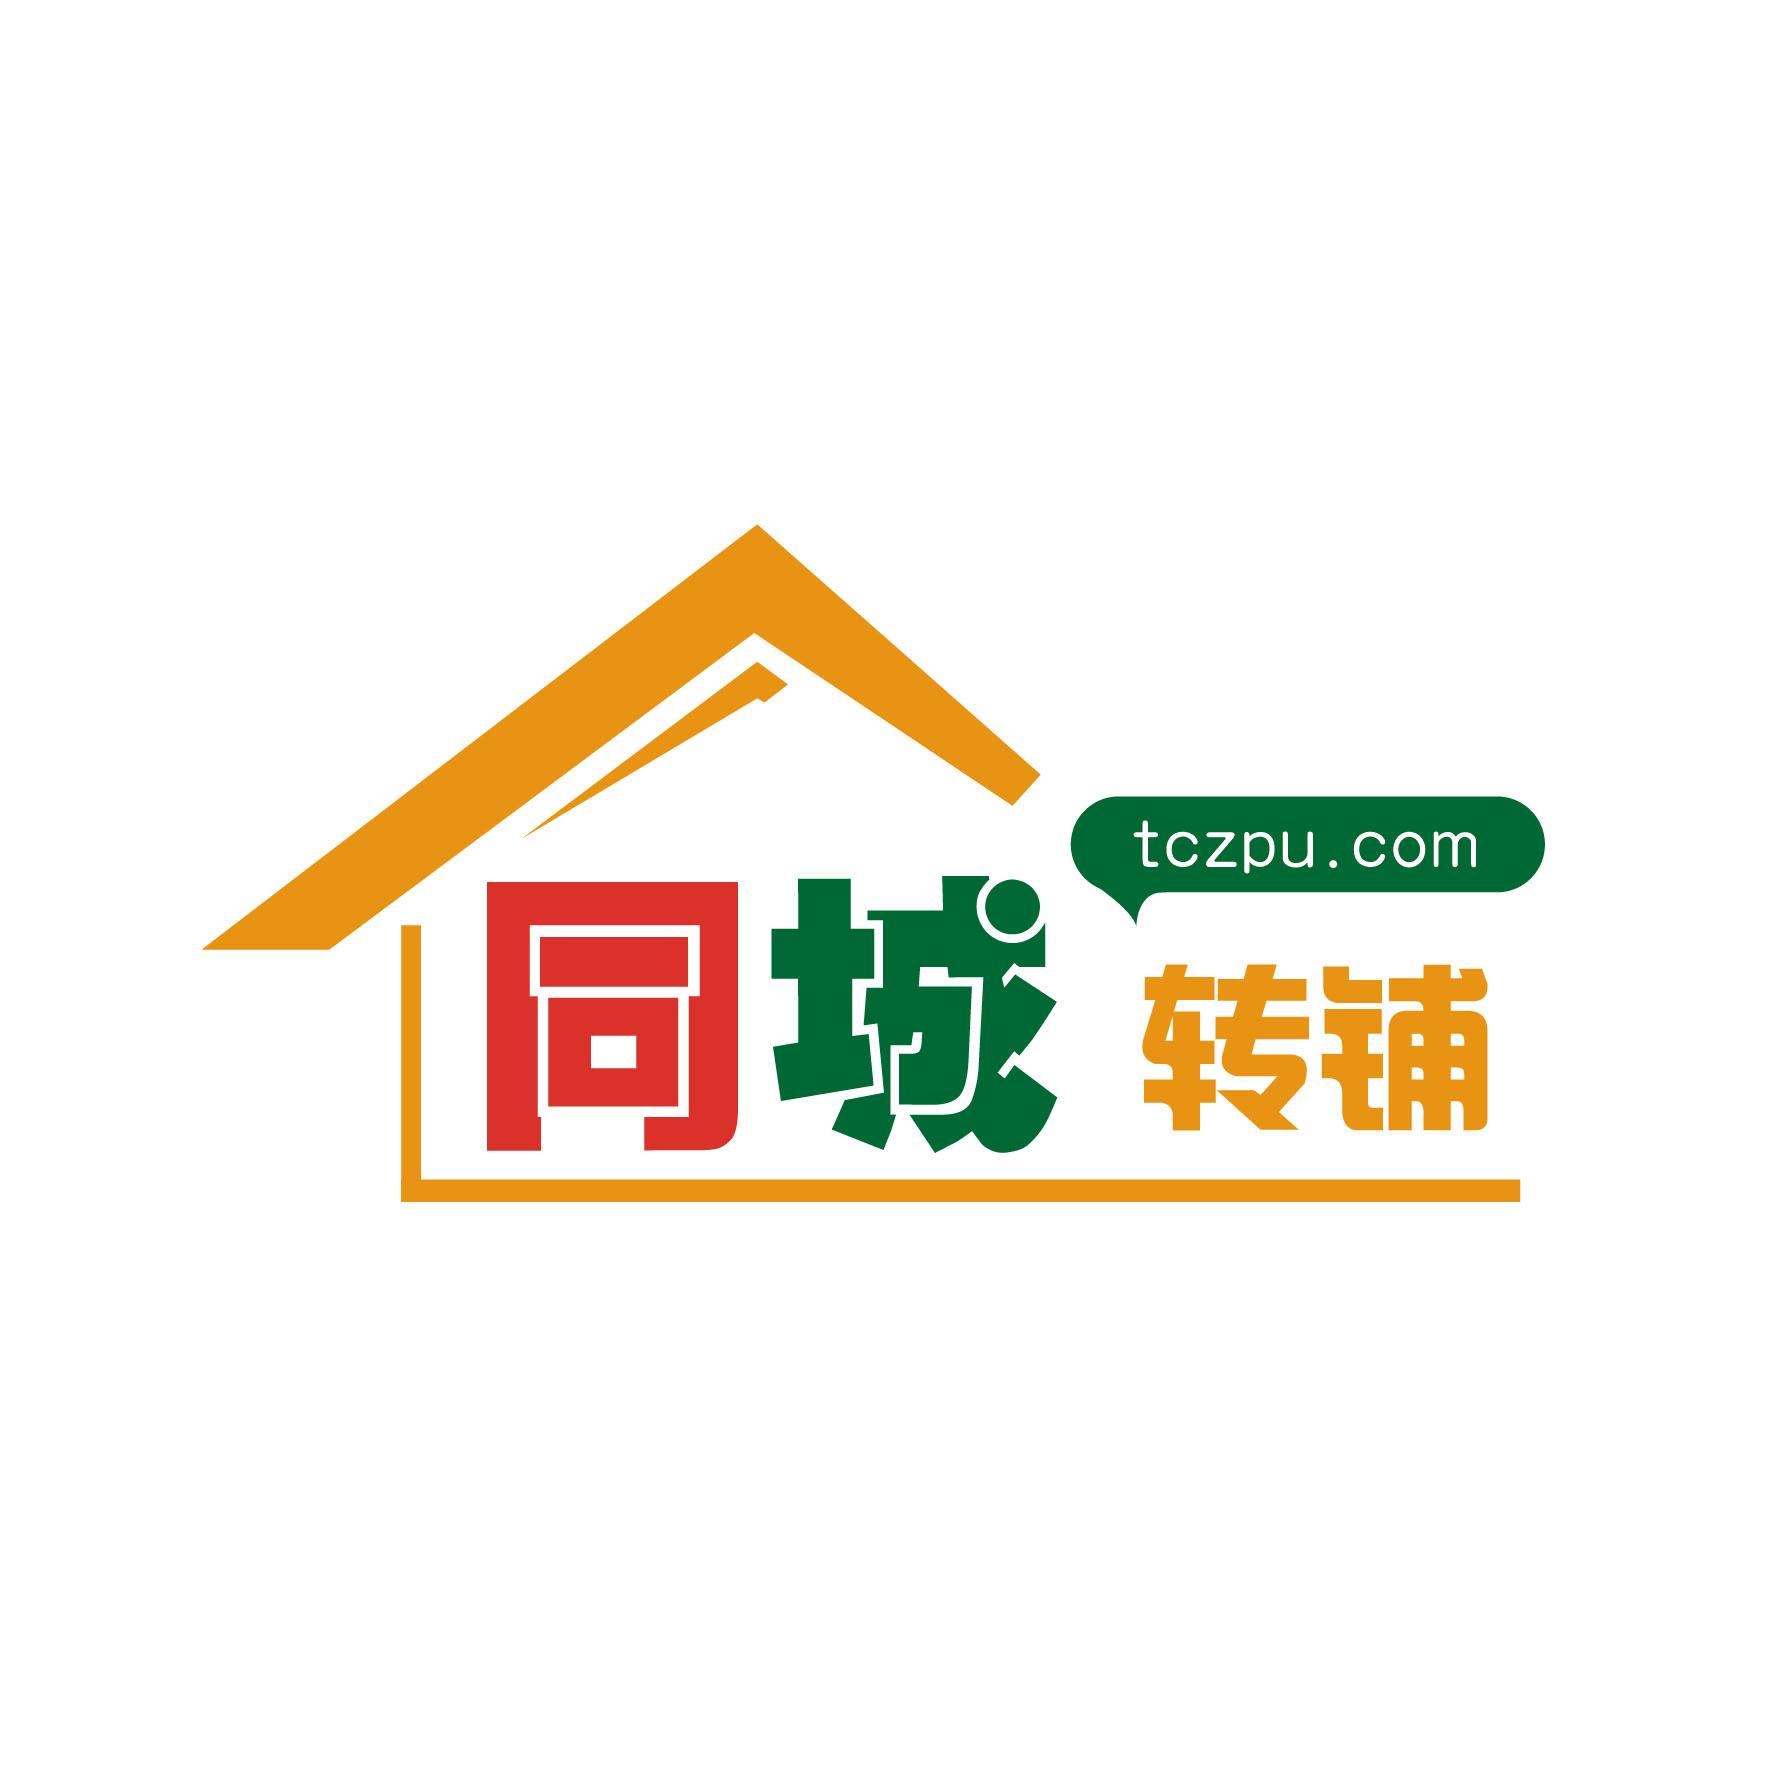 com商标注册号 47411114,商标申请人贵州五八转铺网络科技有限公司的